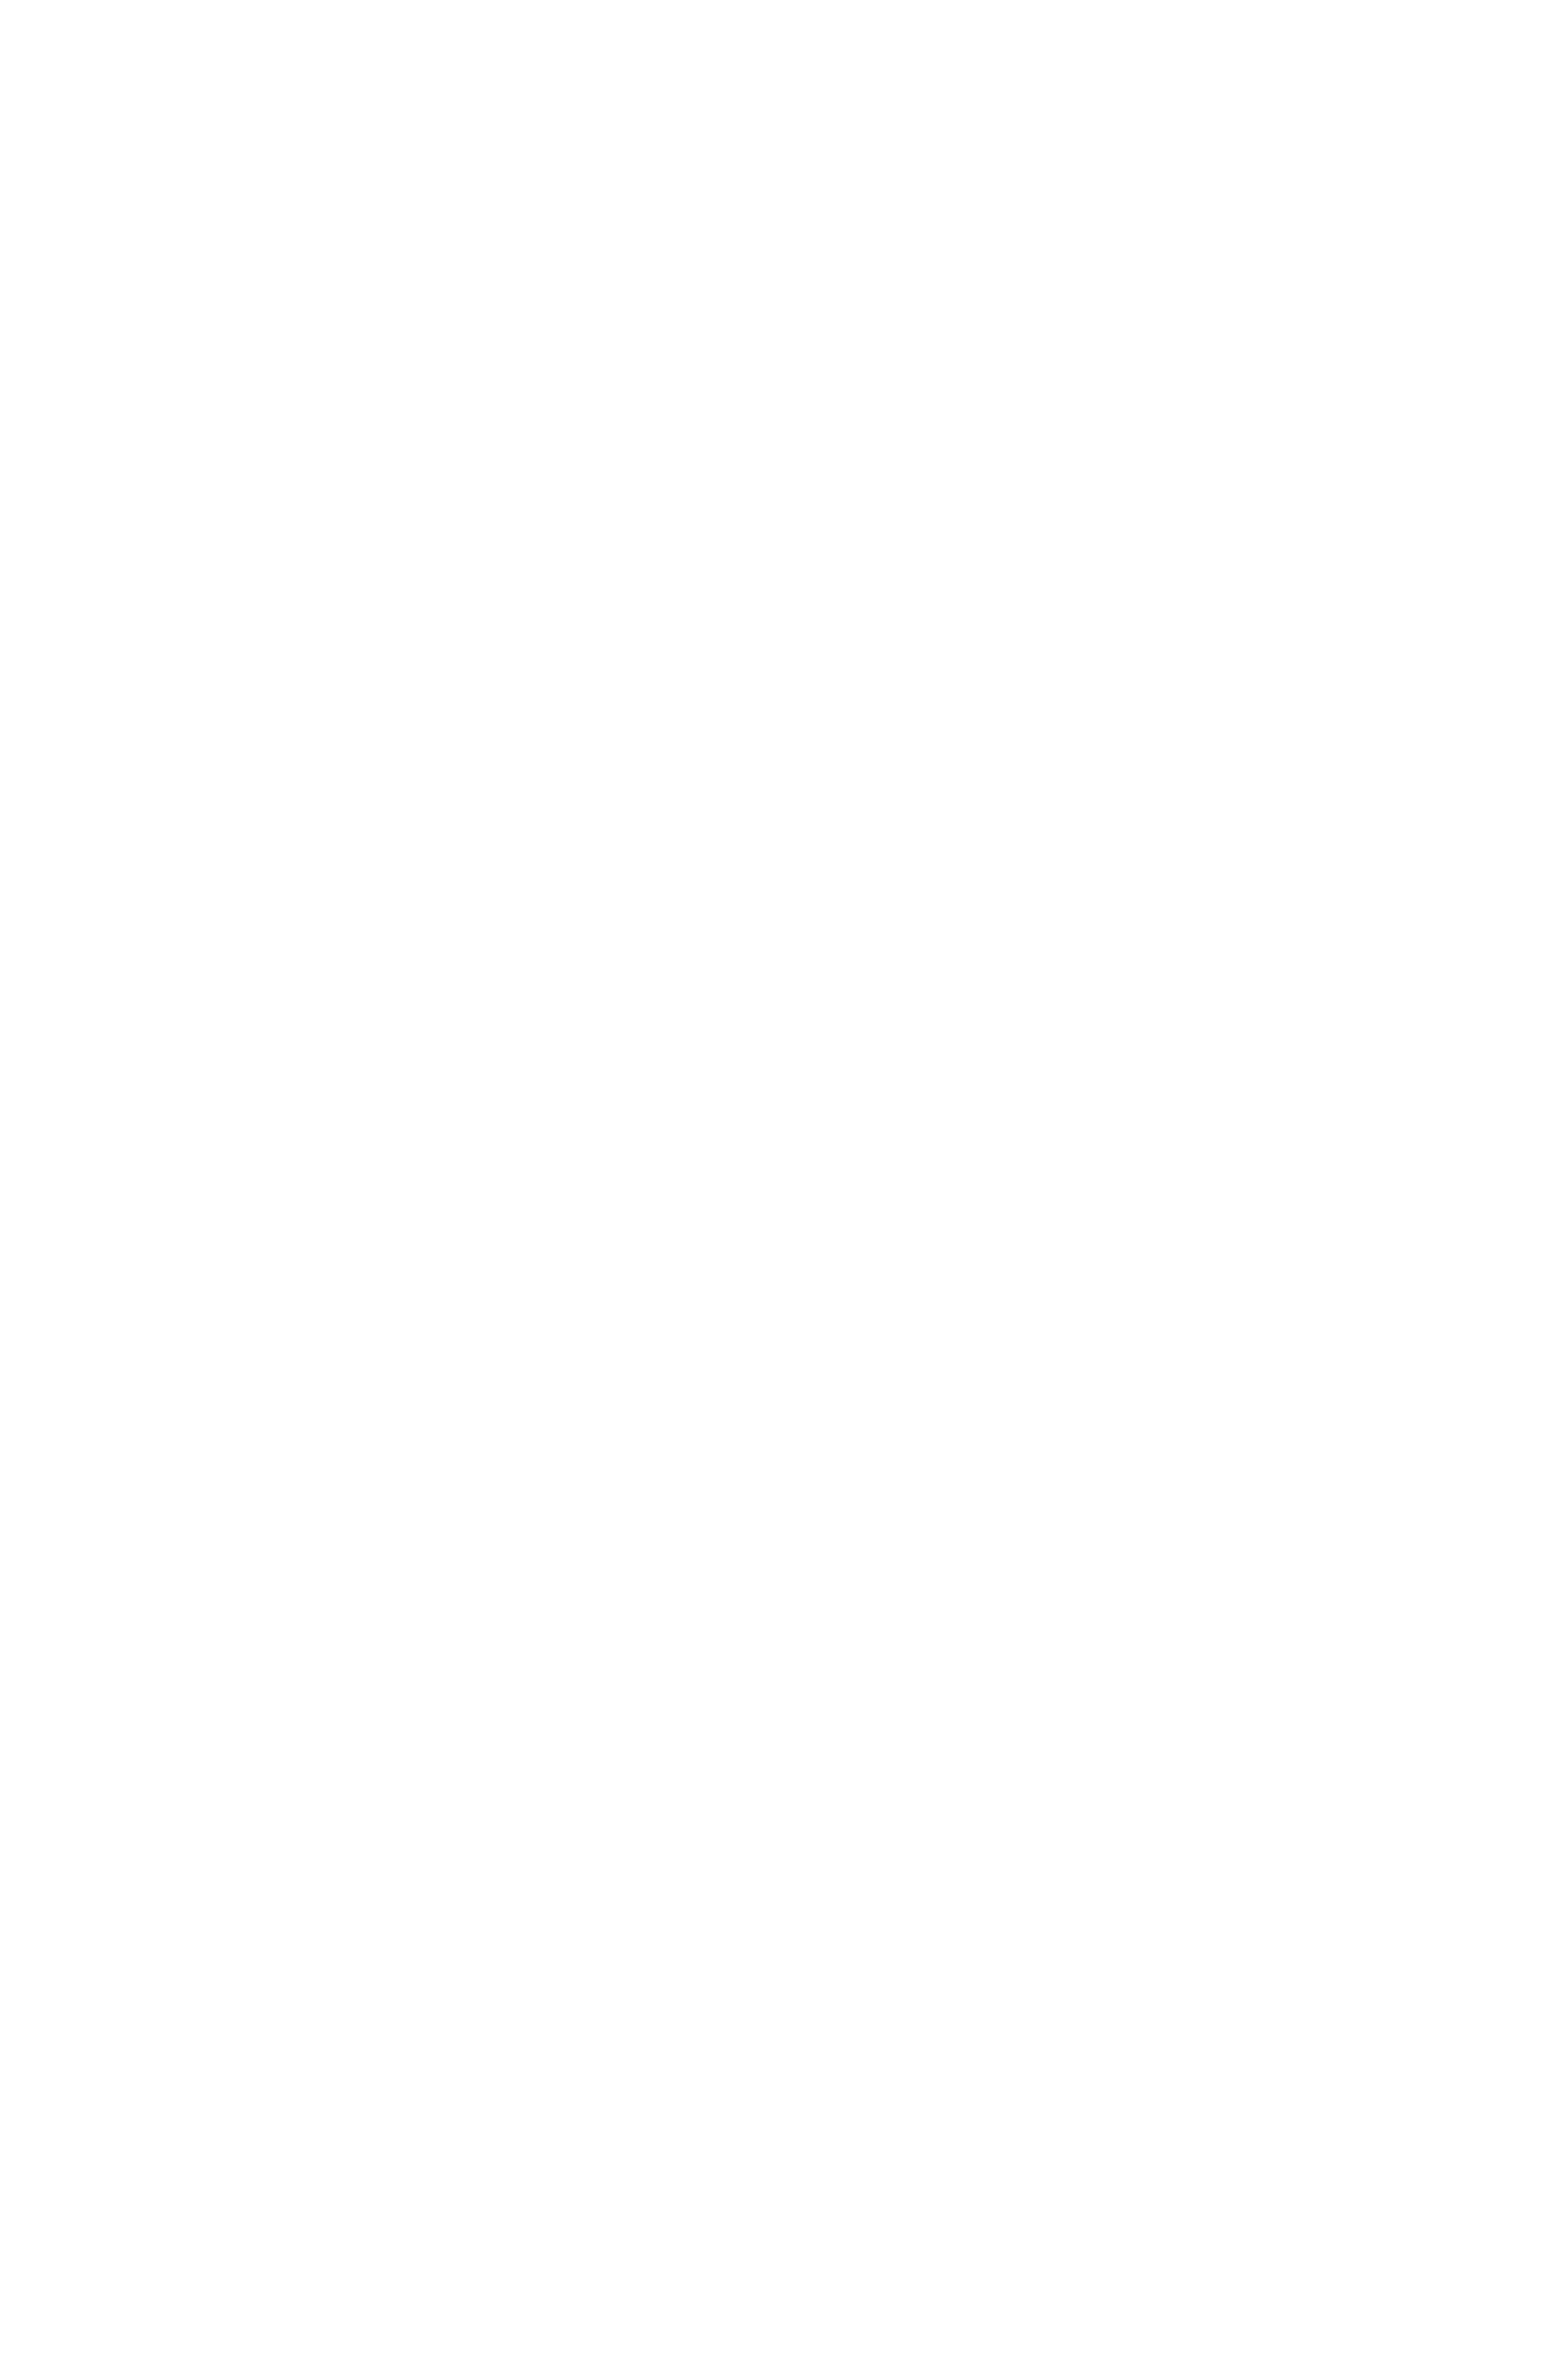 UYUNI Kubbelys LED – Hvit – 5×10,4cm